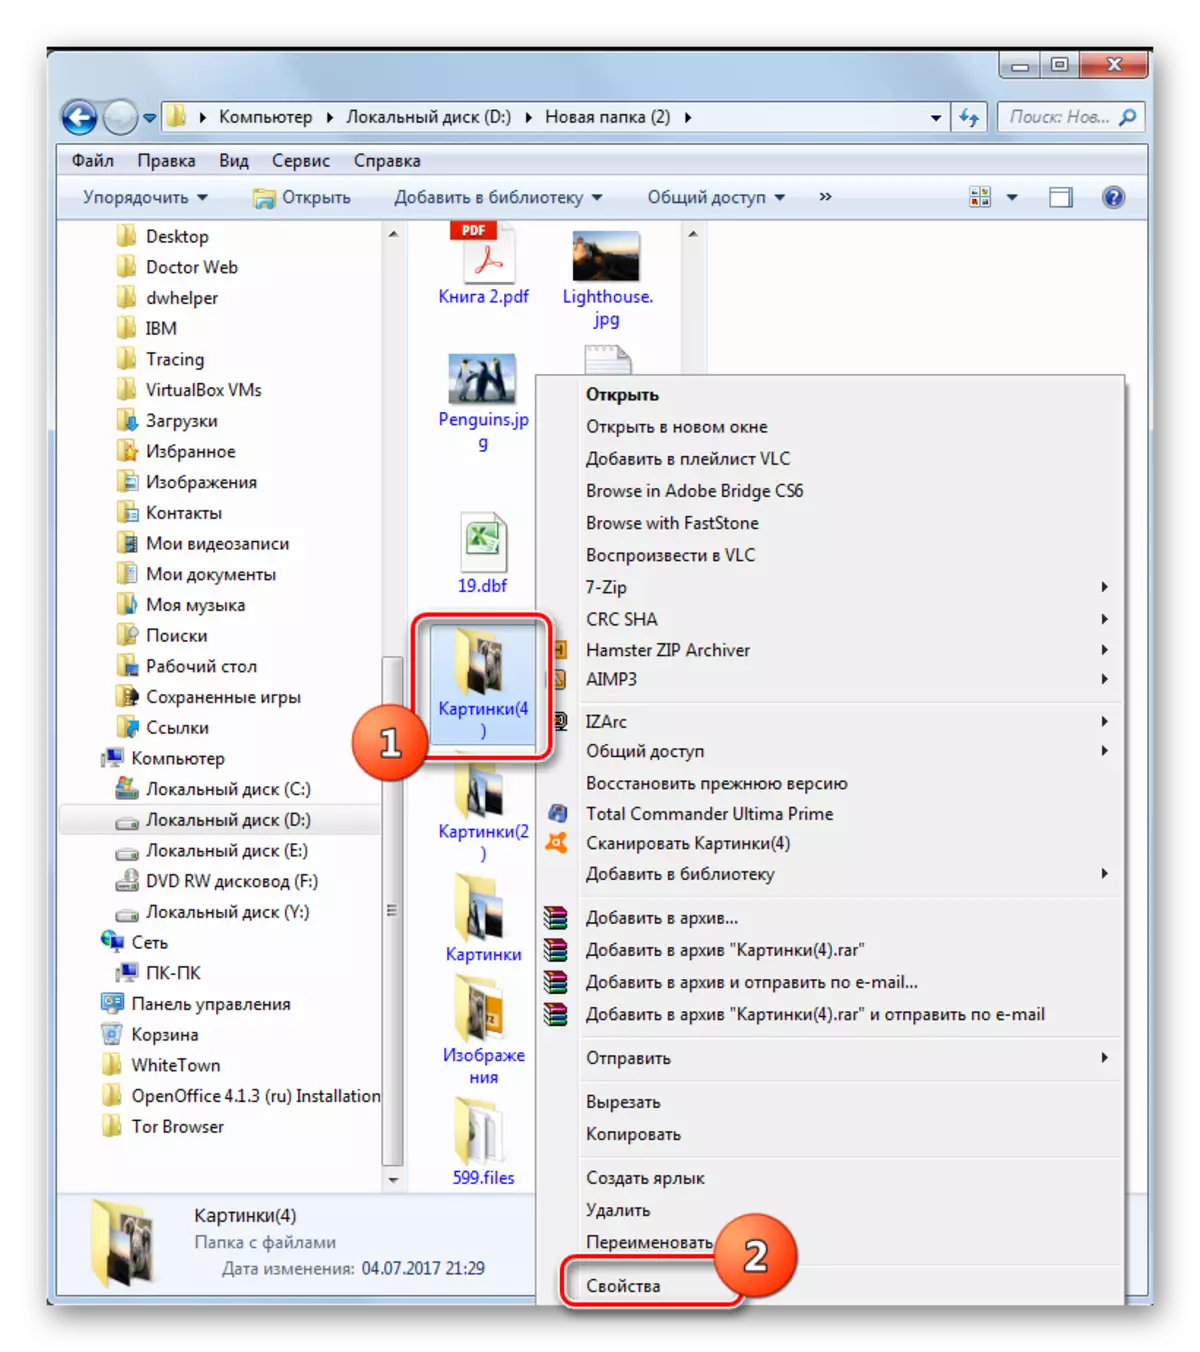 Chuyển đến các thuộc tính của một thư mục riêng thông qua menu ngữ cảnh trong Windows 7